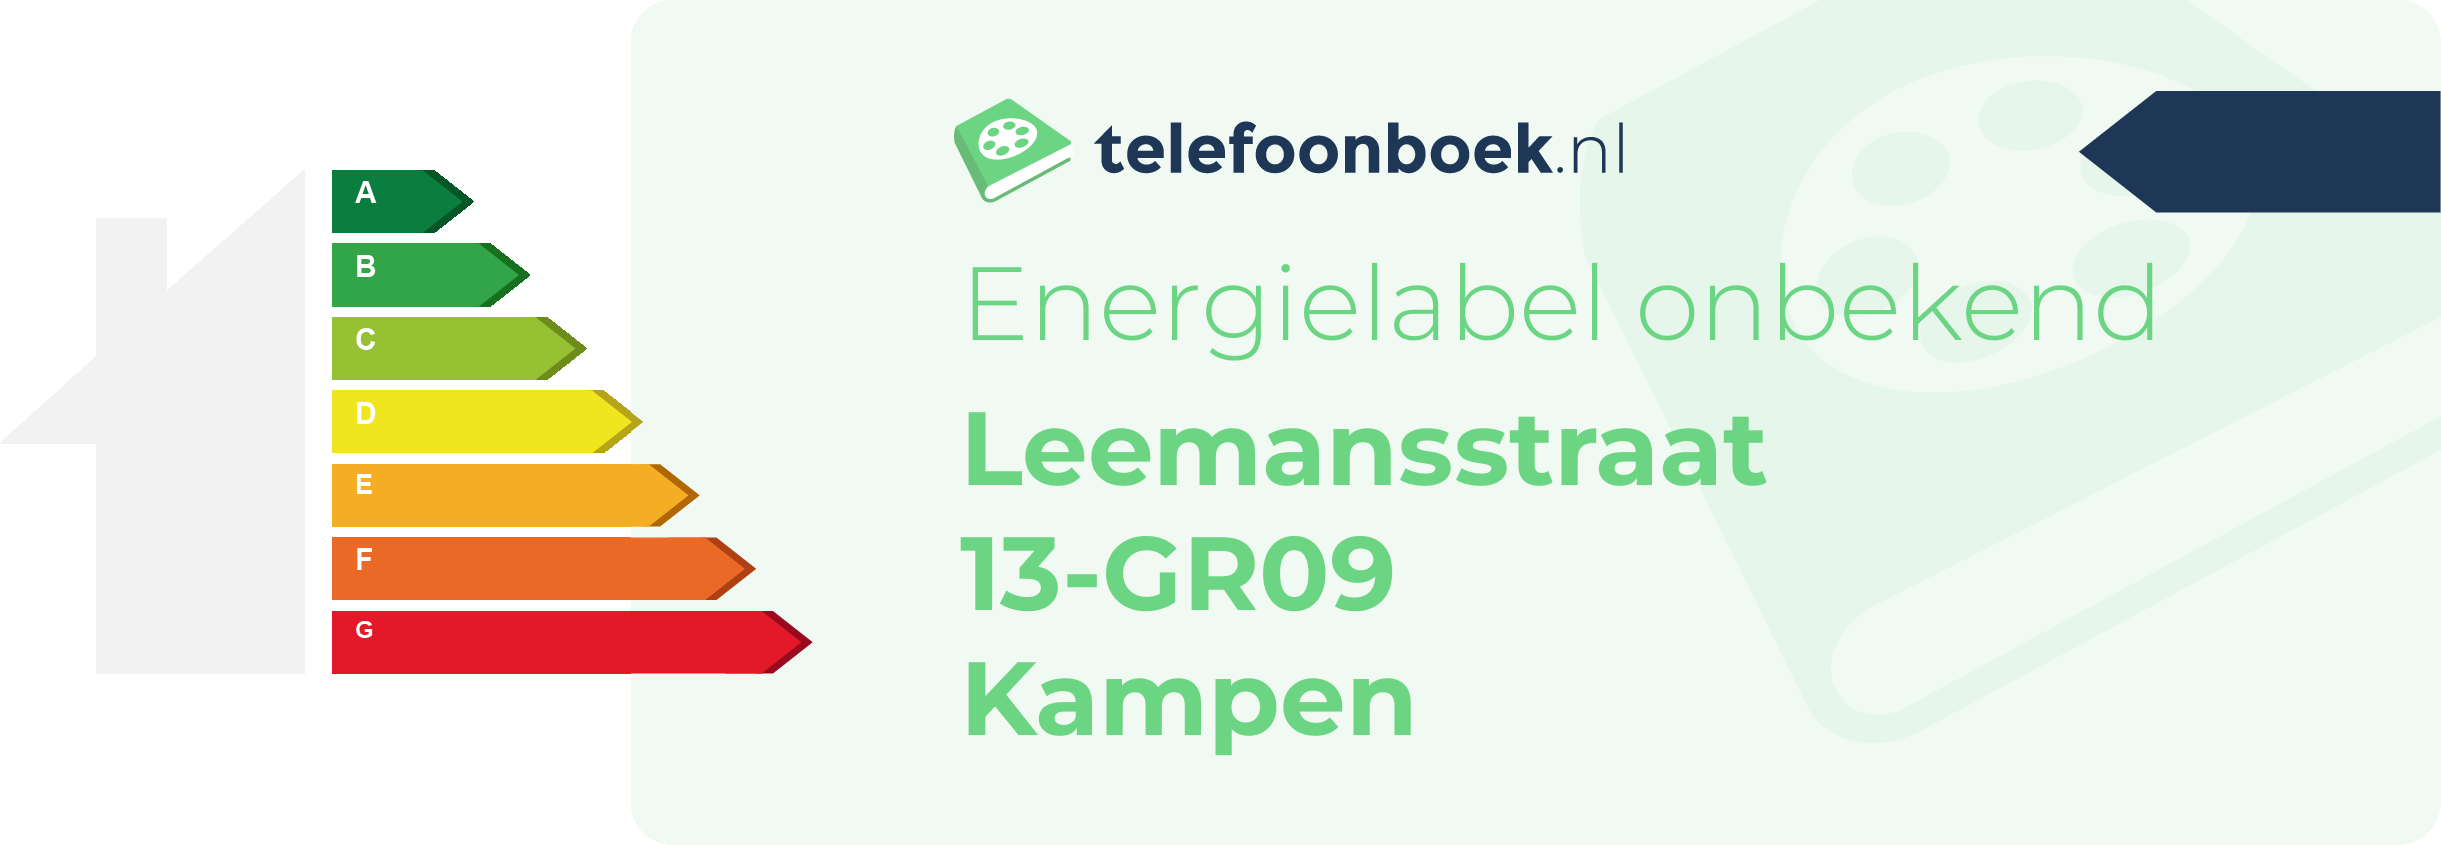 Energielabel Leemansstraat 13-GR09 Kampen